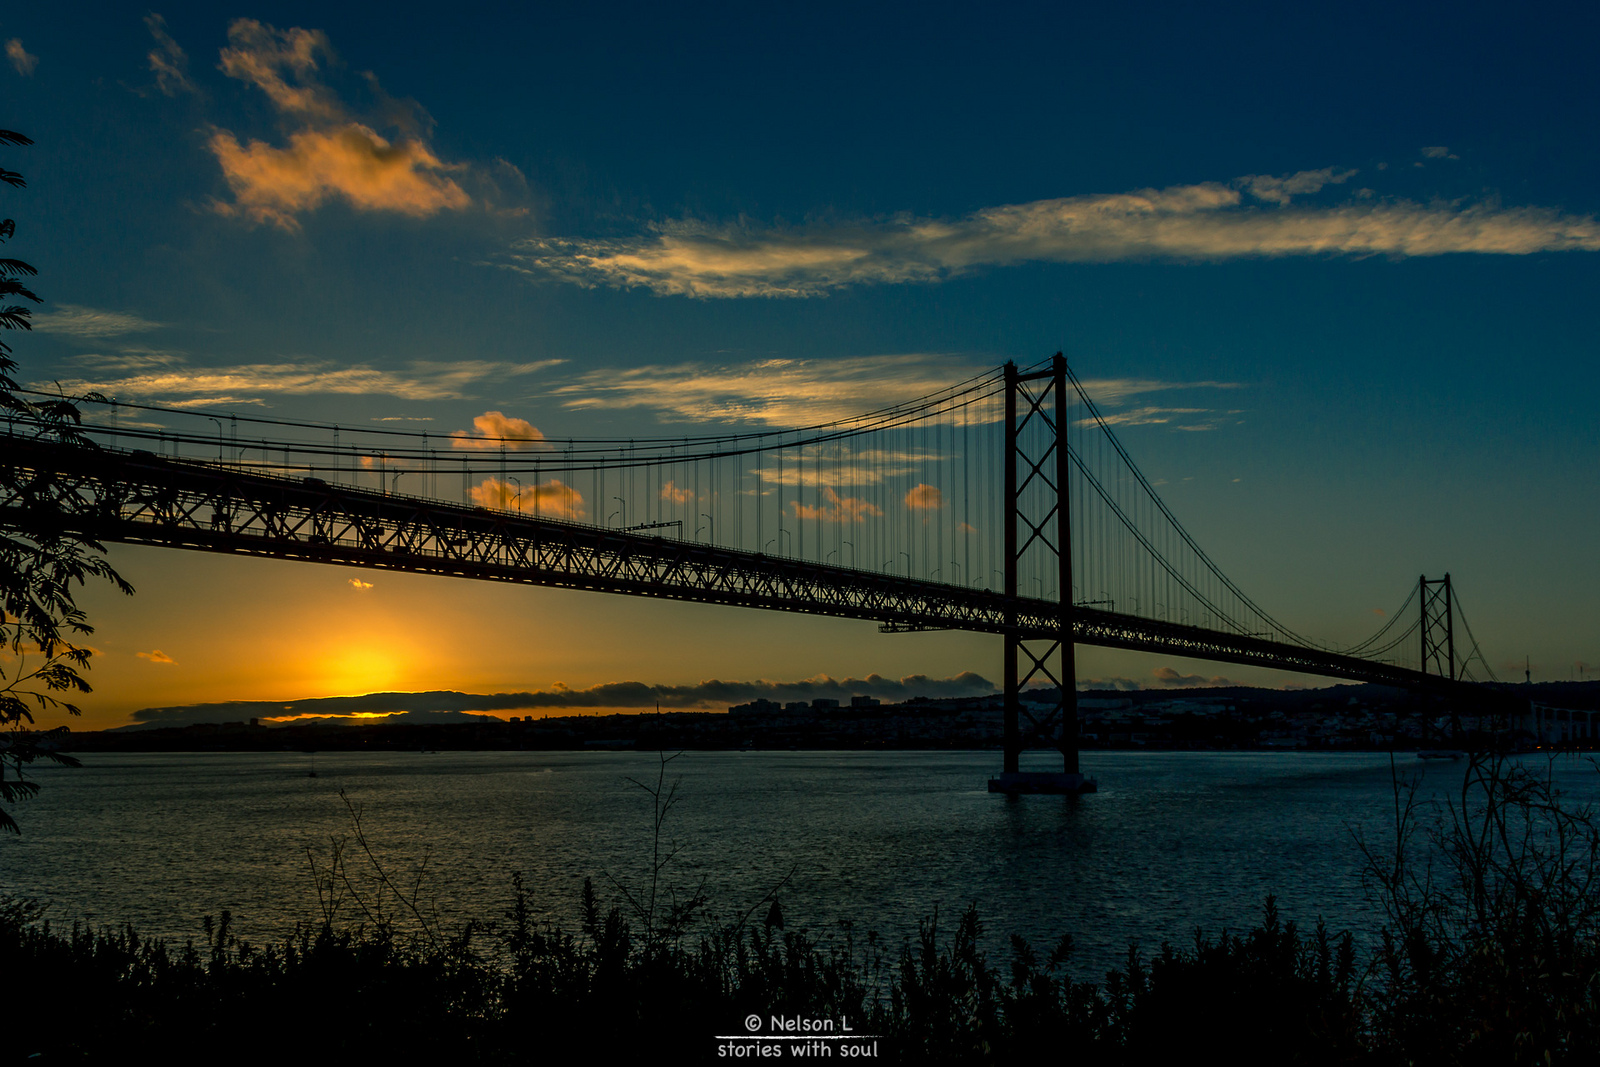 Le Pont du 25 avril au dessus du Tage, à Lisbonne. Crédit photo @Nelson L. - Flickr